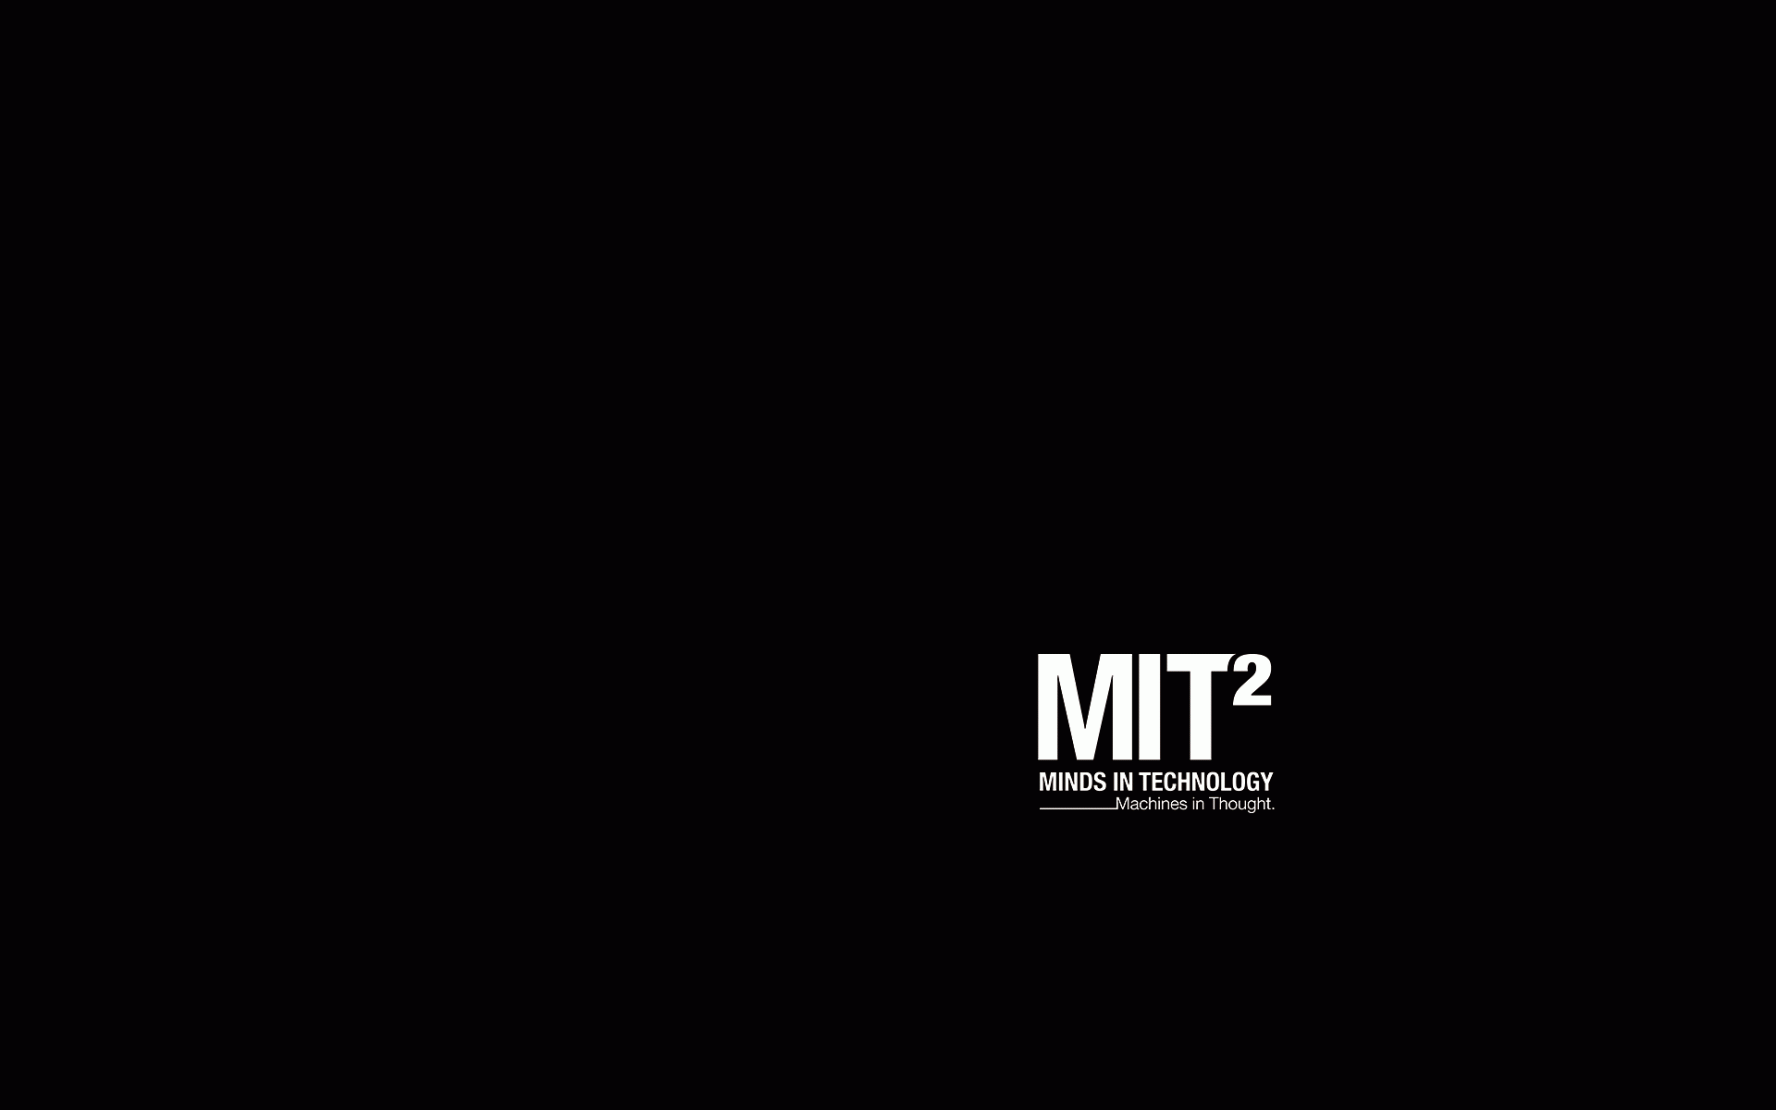 MSIE Logo - MIT2 Logo Bkgnd 19201200 D. Sawyer, PhD, MSIE